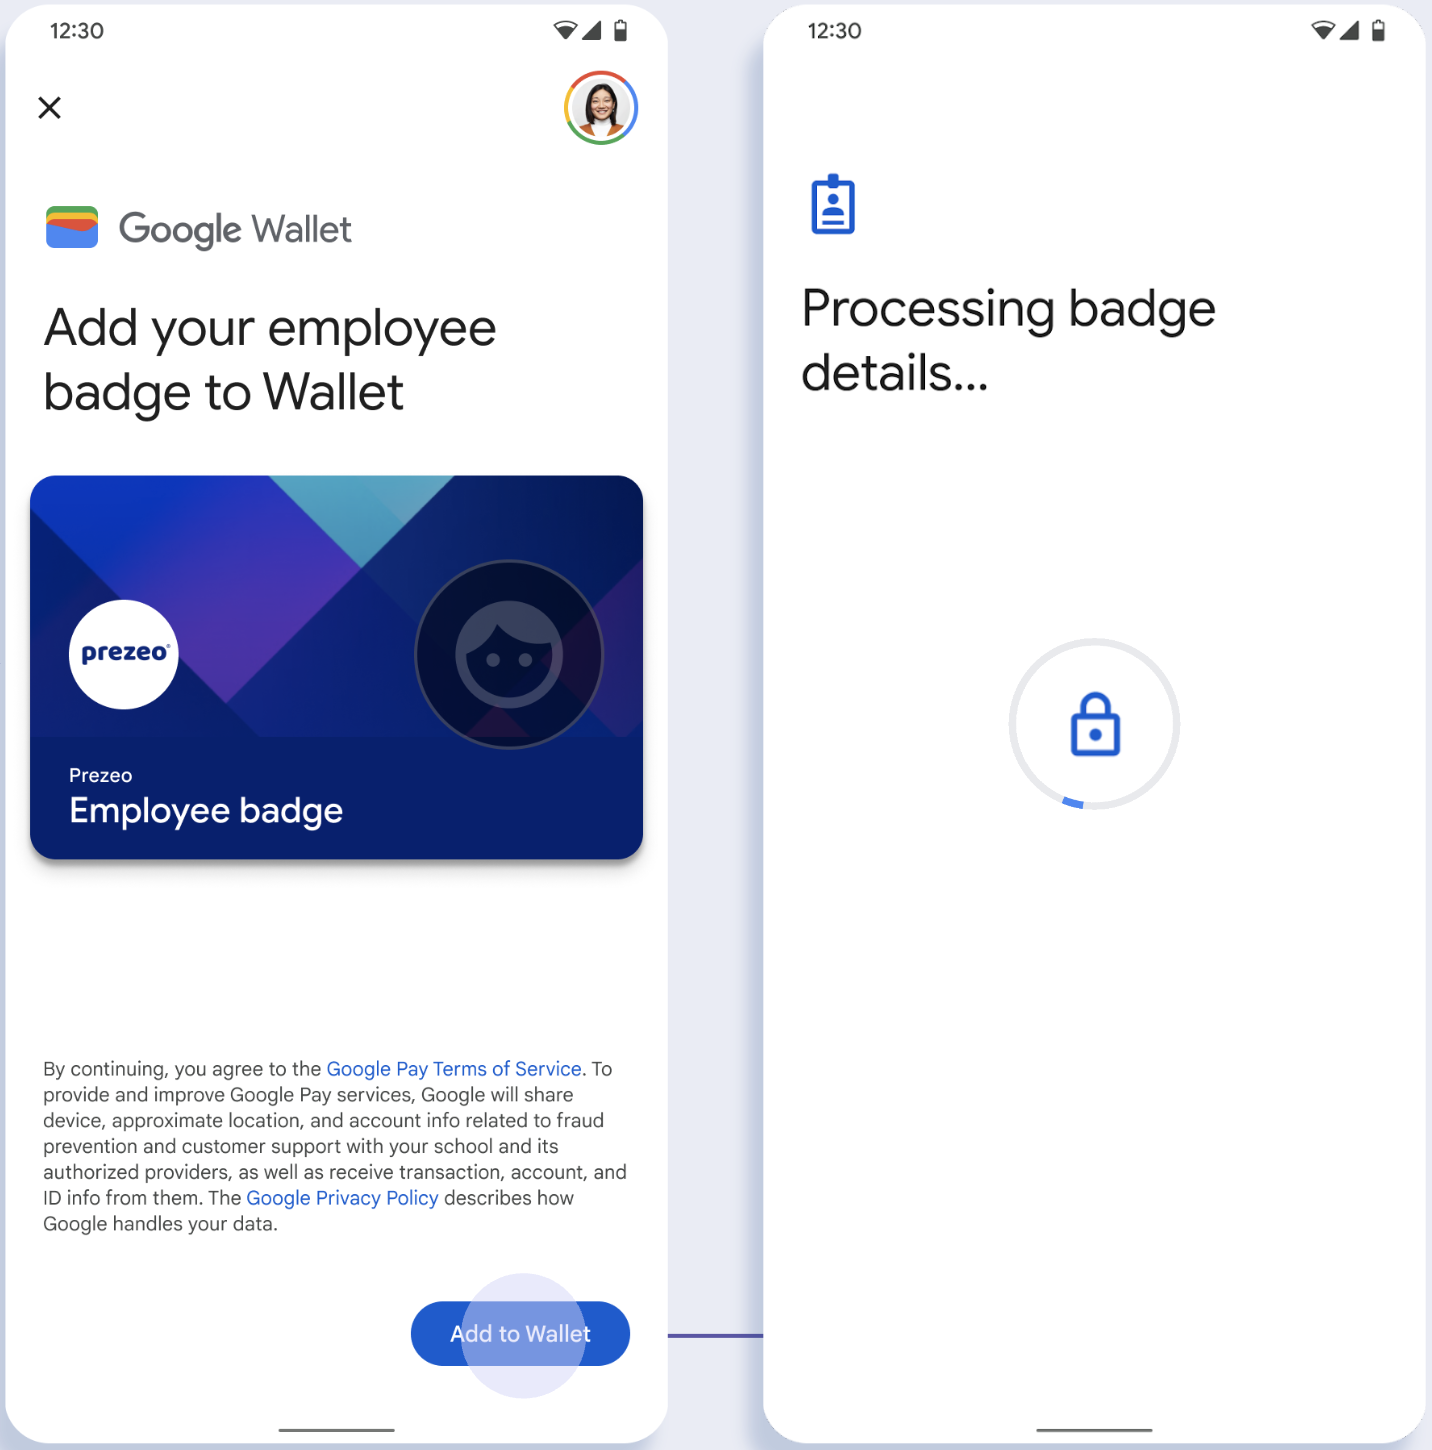 En la primera pantalla, la app se conecta con la Billetera de Google. En la segunda pantalla, el usuario acepta las Condiciones del Servicio y continúa.